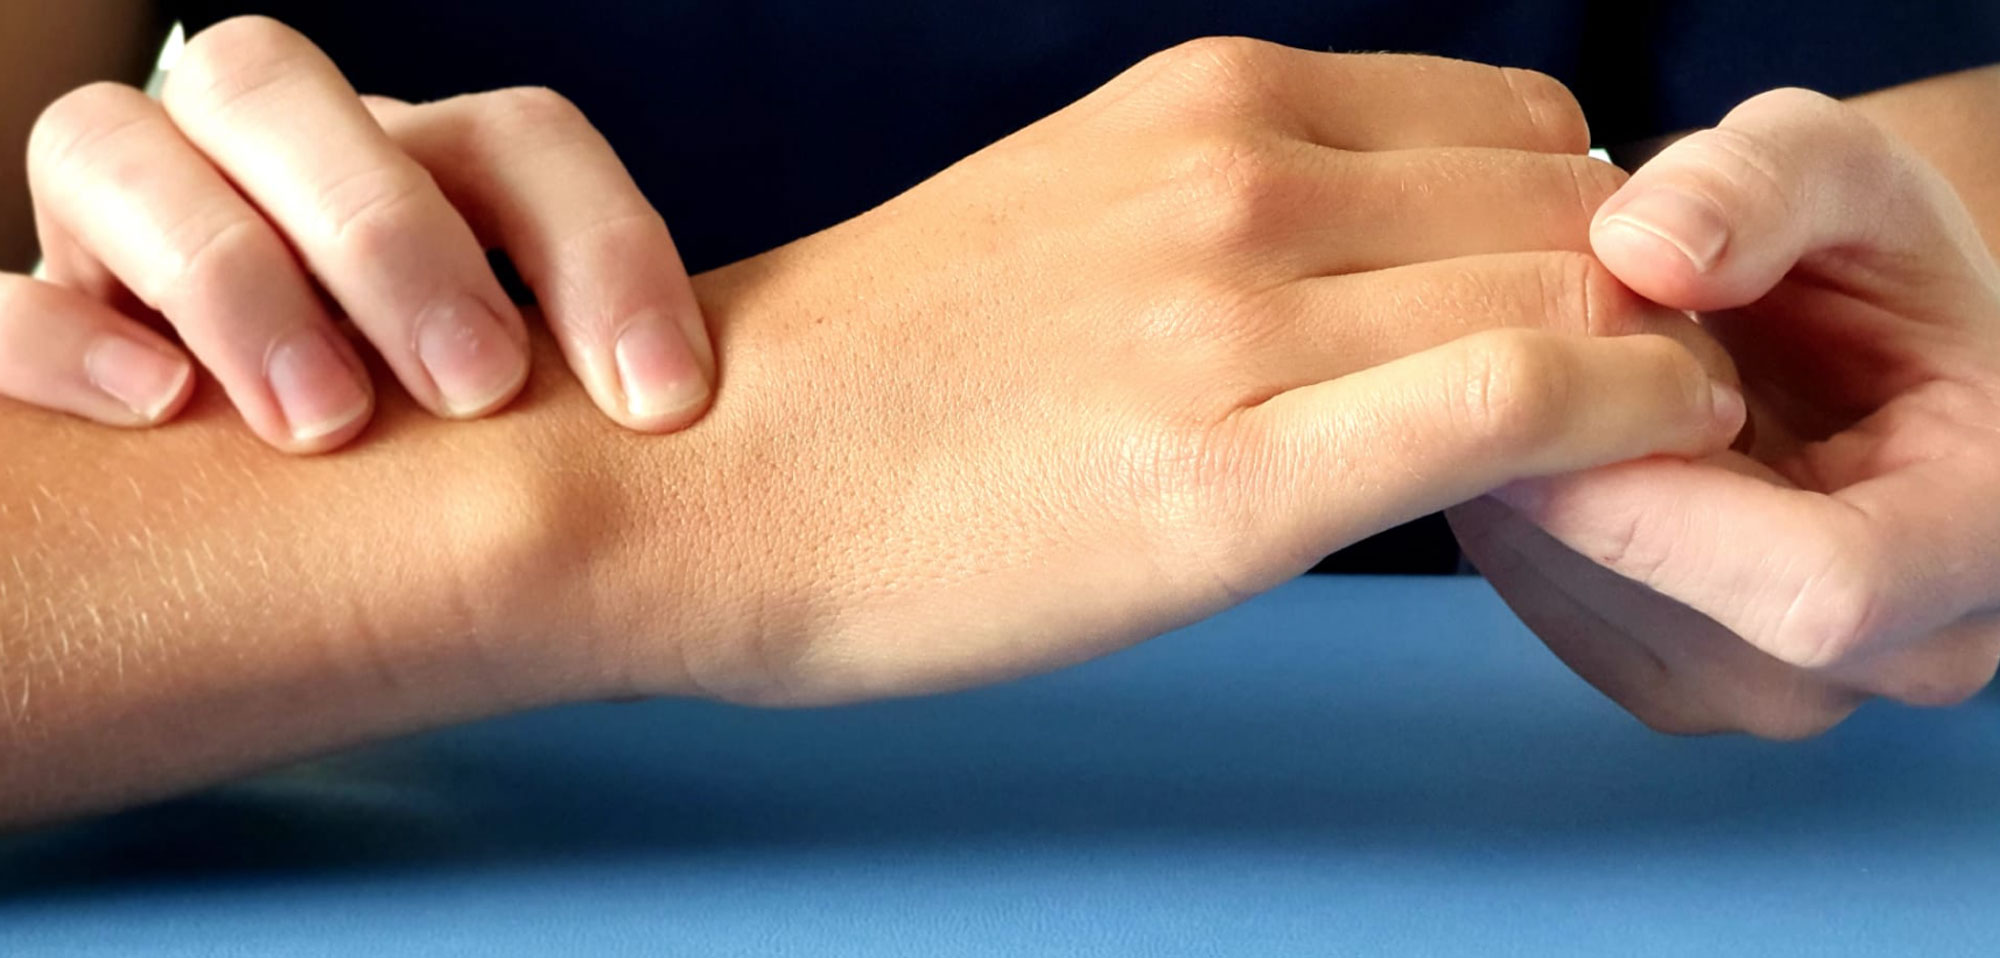 Kyste synovial, pathologie fréquente de la main